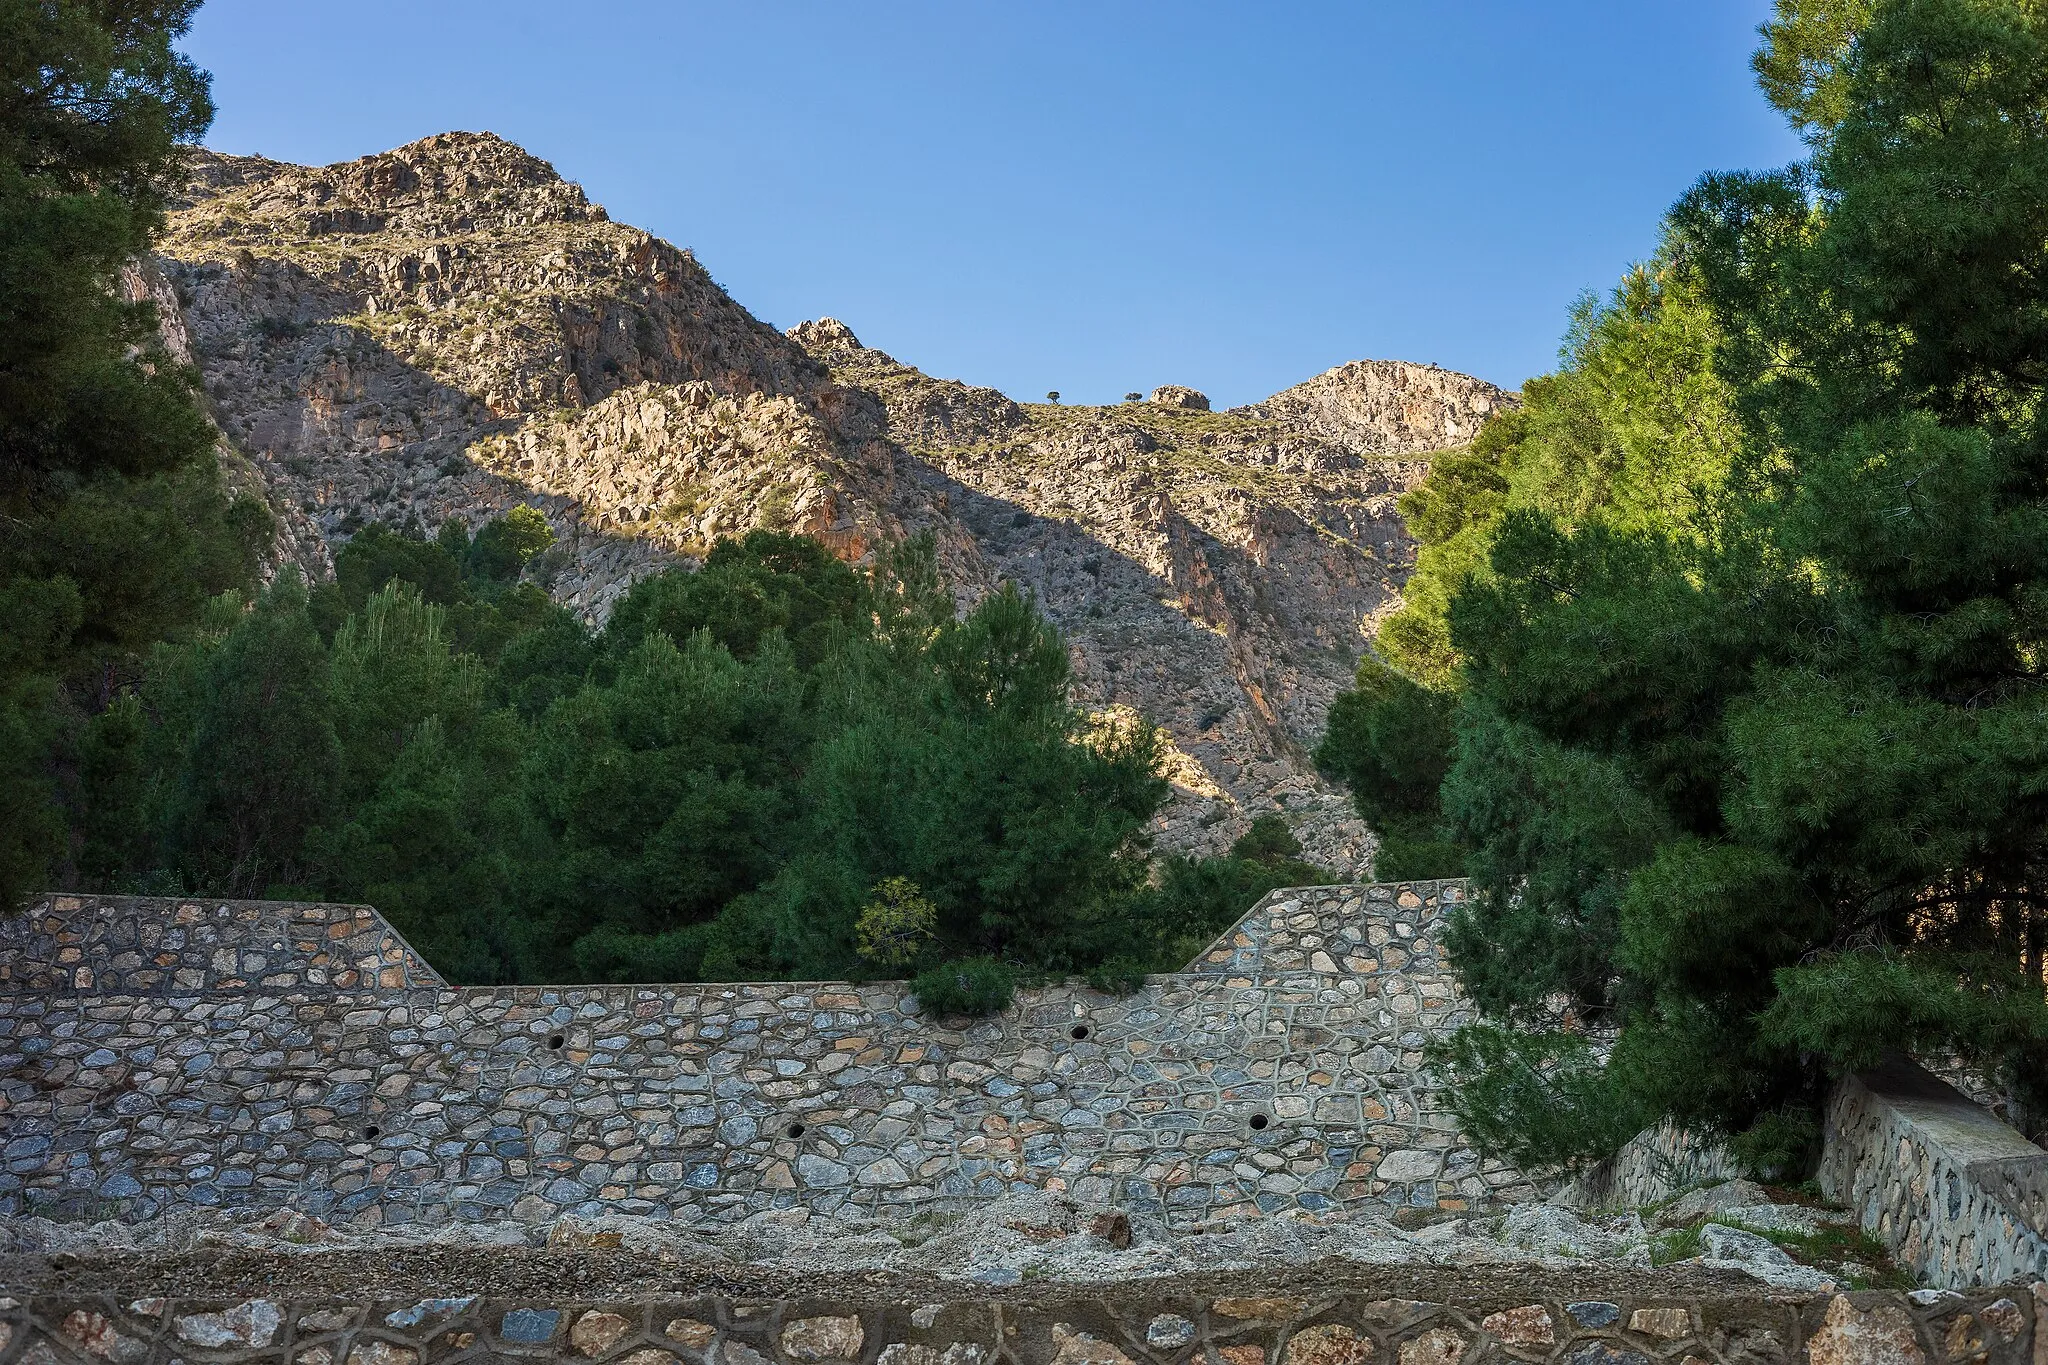 Photo showing: A large drop structure for the waterflow of La Rambla in Paraje Natural La Pilarica in Sierra de Callosa mountains in Callosa de Segura, Alicante, Spain, 2022 January.